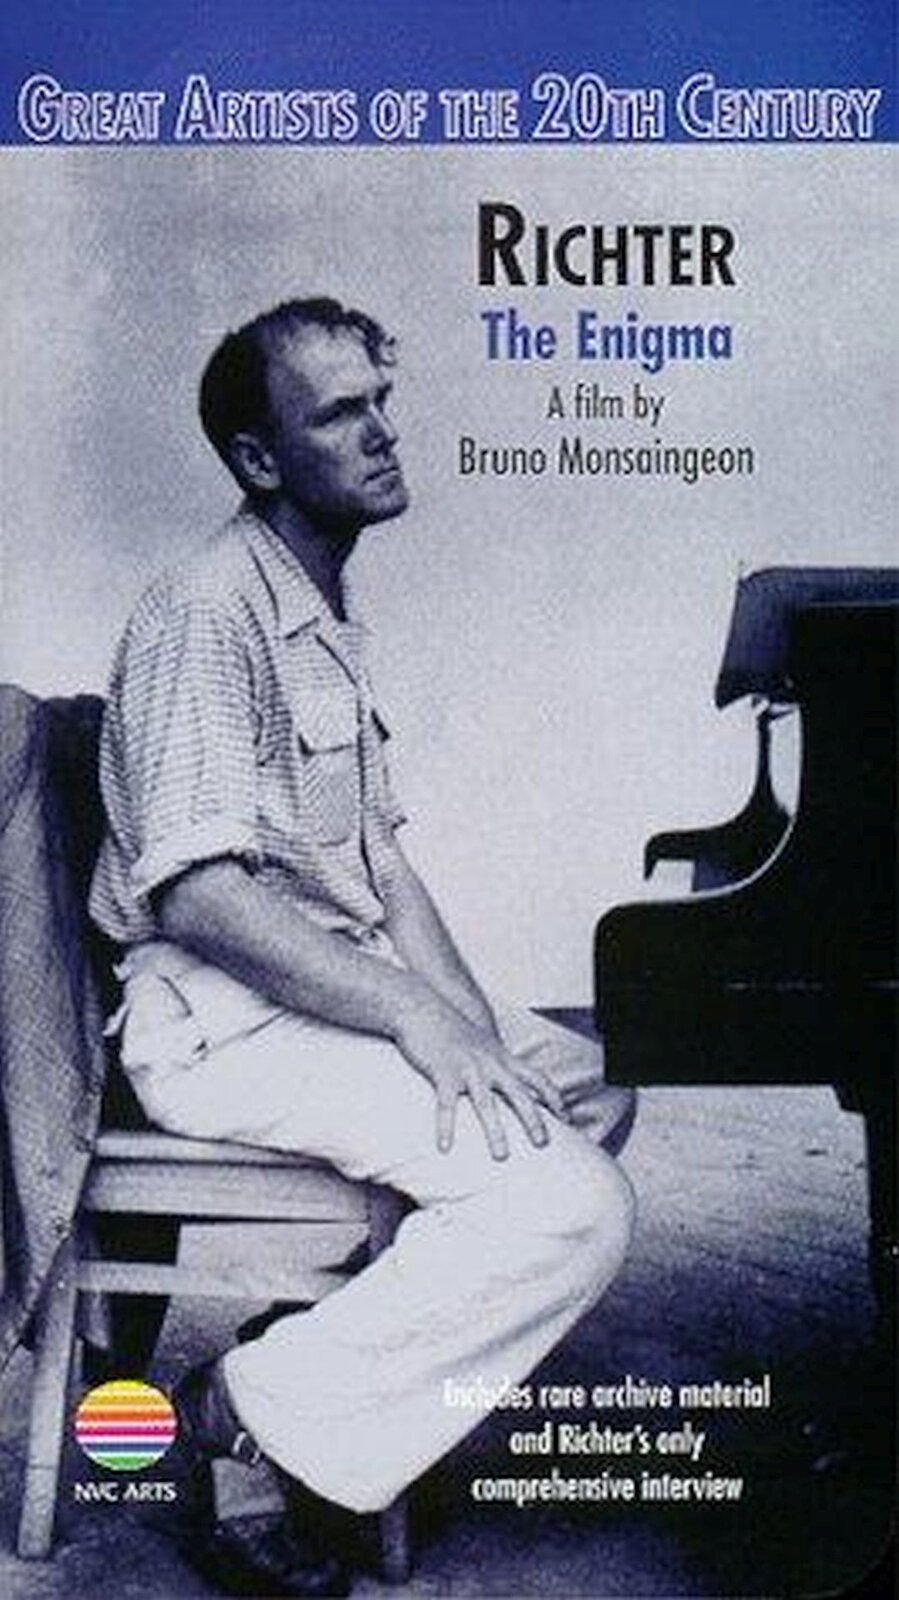 Ilustracja przedstawia okładkę wydania DVD filmu „Enigma”. Widać na niej mężczyznę siedzącego przy fortepianie, który ma głowę uniesioną ku górze, jest zamyślony i smutny. Ubrany jest w białą koszulę i białe spodnie. Na krześle wisi szara marynarka.